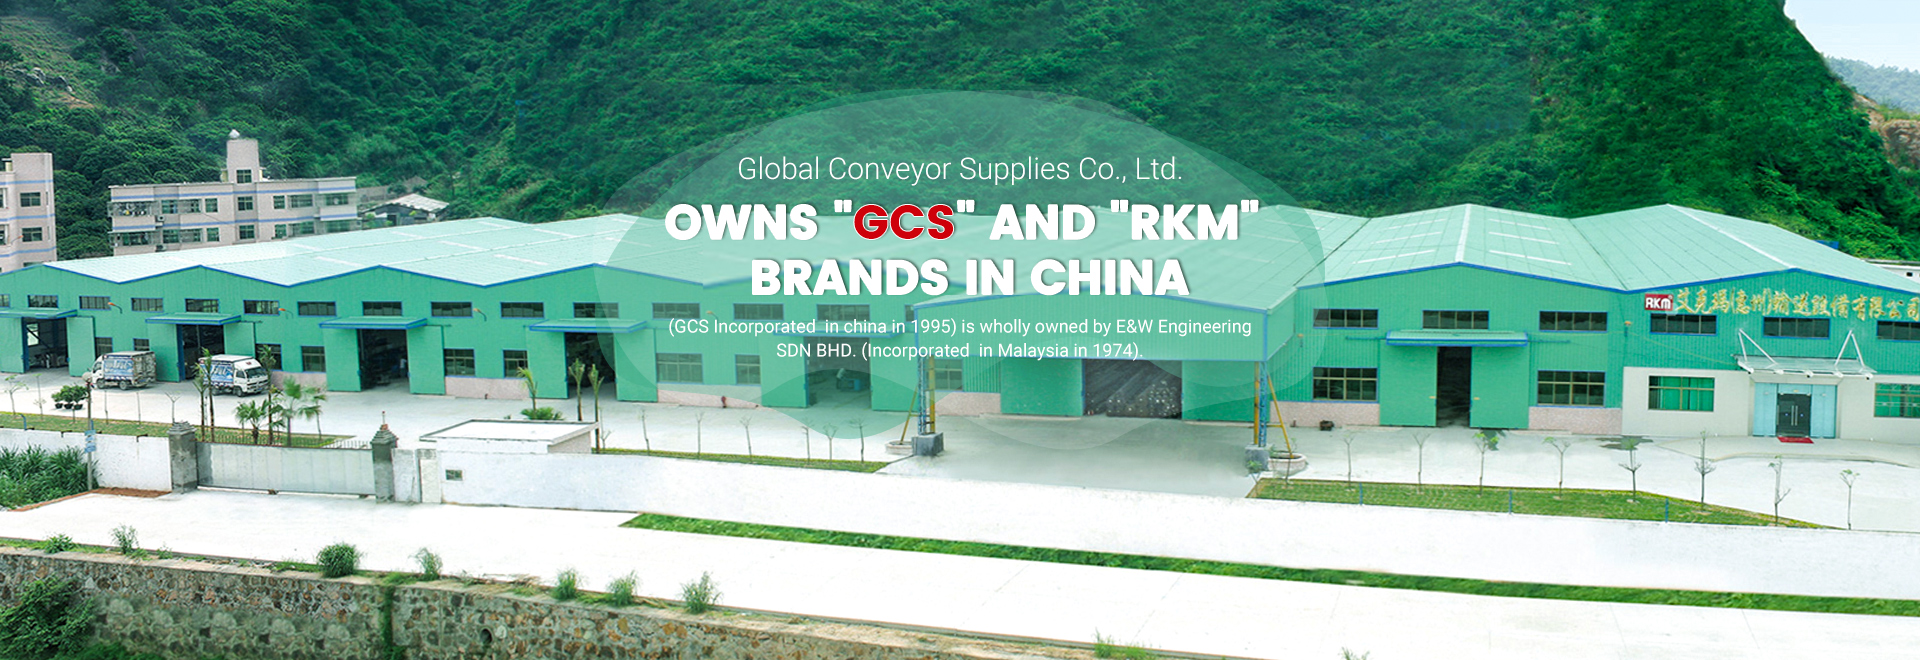 GCS Globali Conveyor Supplies